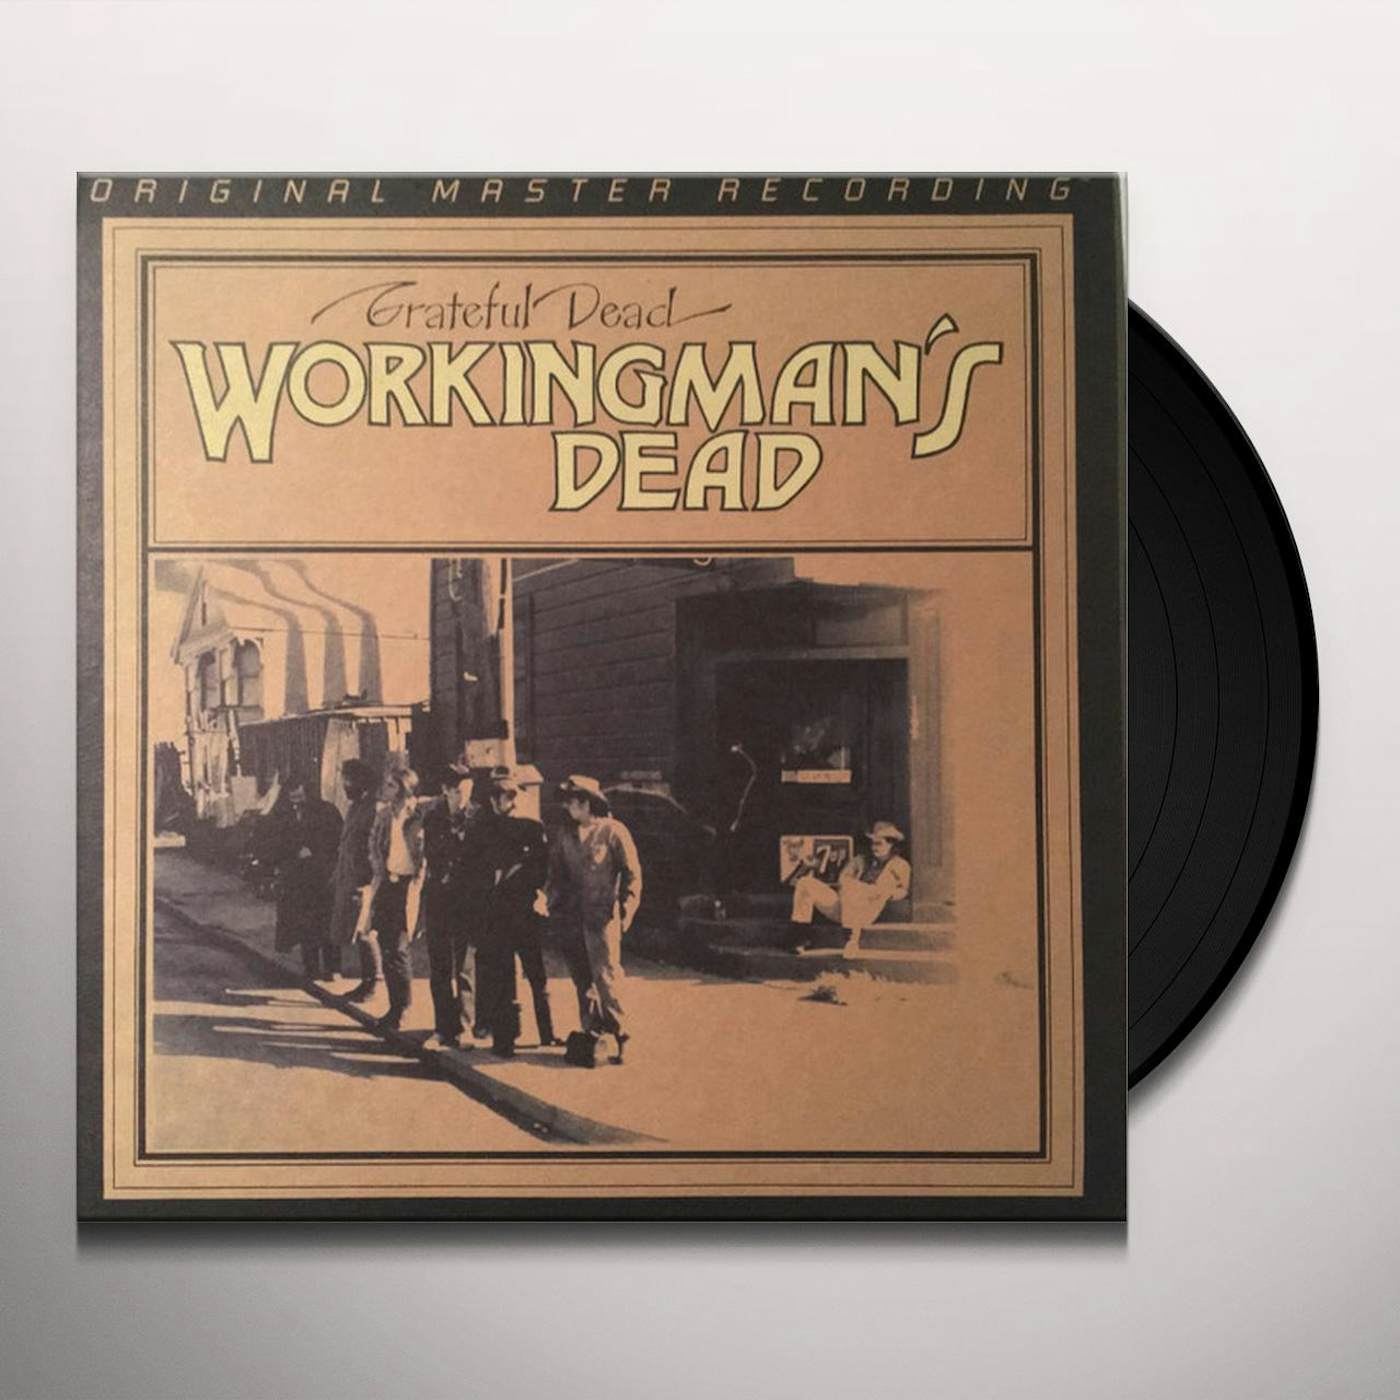 Skru ned kedelig forståelse Grateful Dead Workingman's Dead Vinyl Record